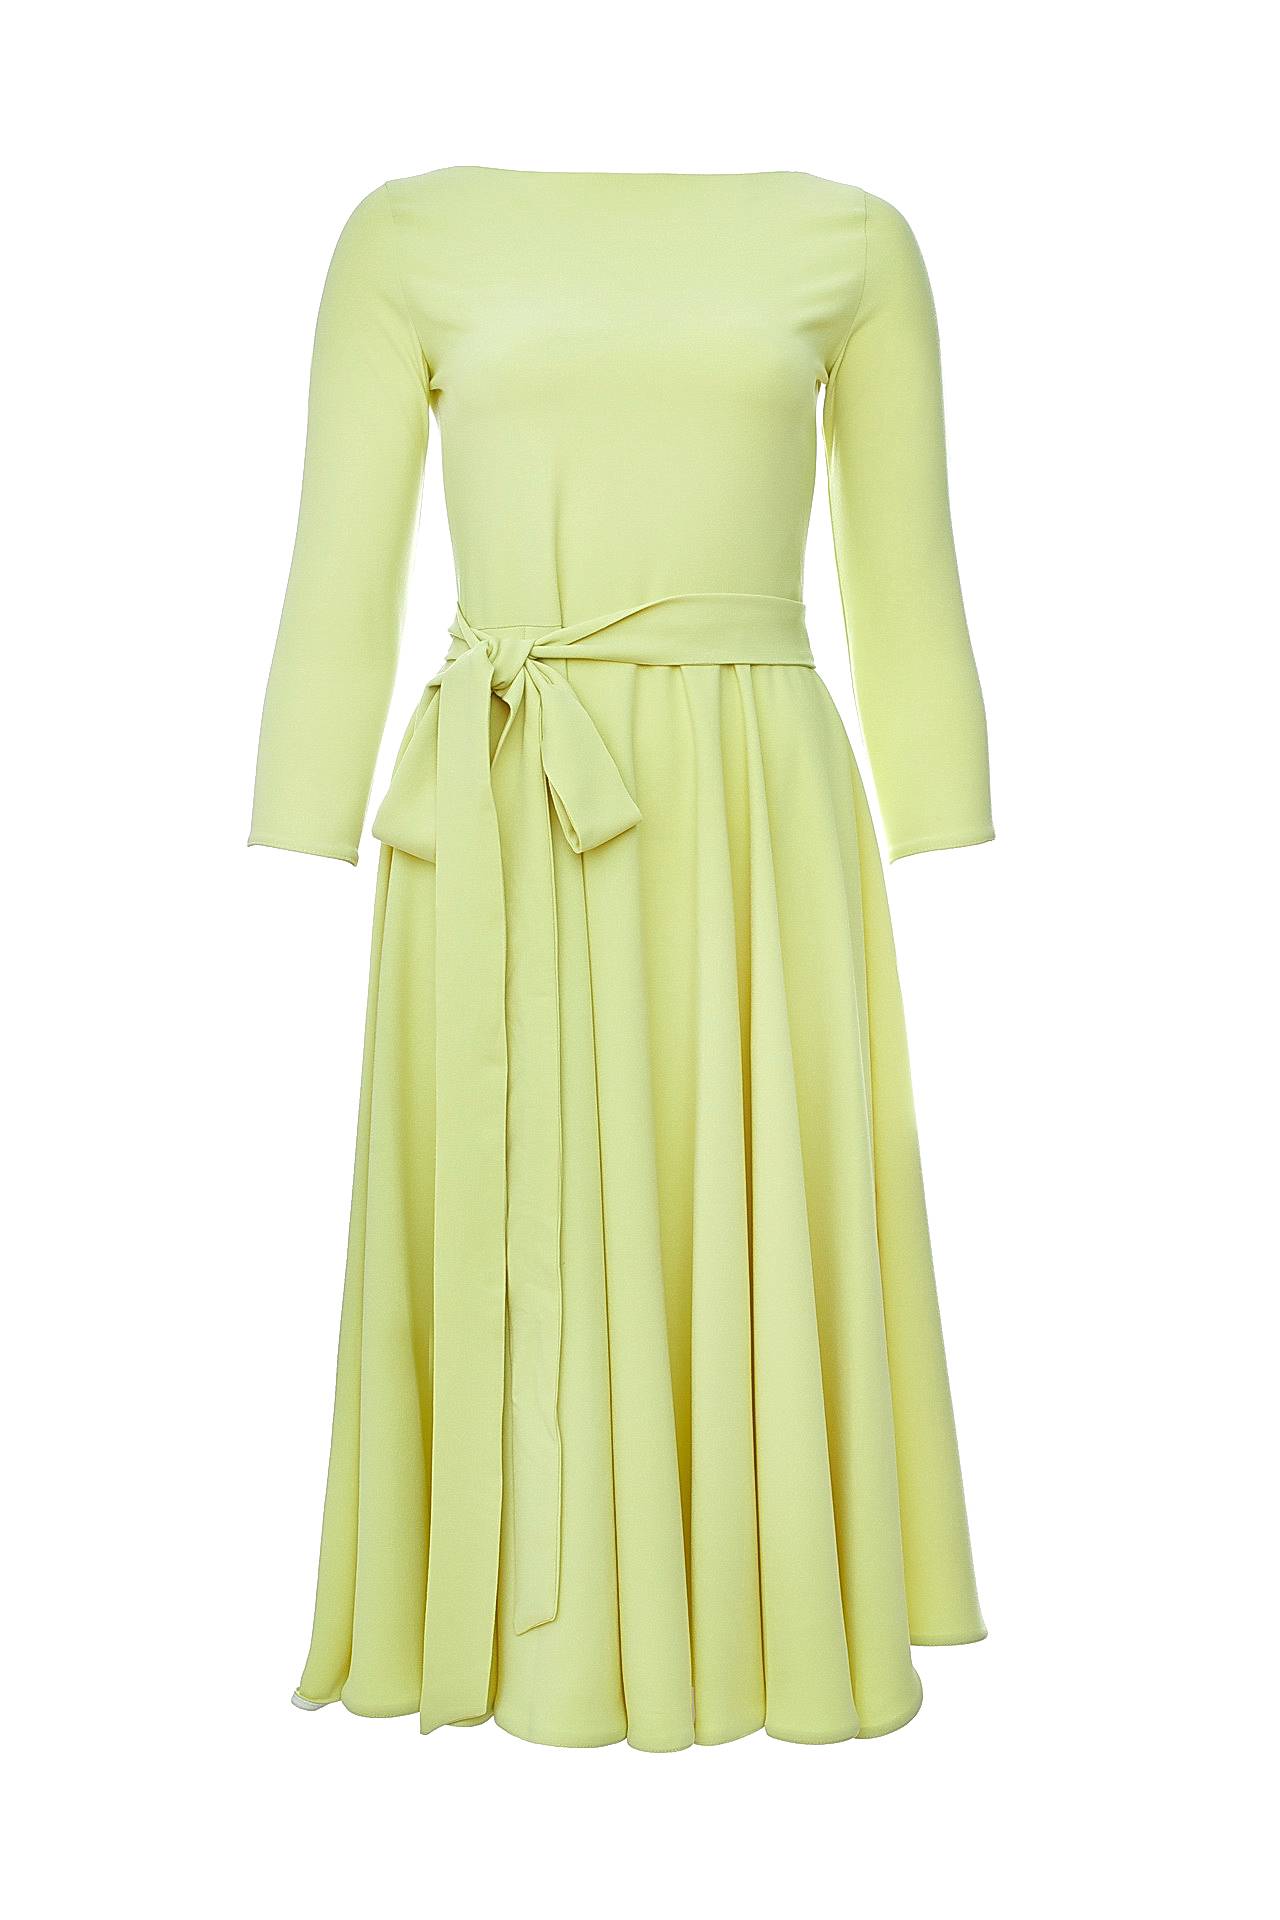 Одежда женская Платье RHEA COSTA (4083D/16.3). Купить за 22750 руб.